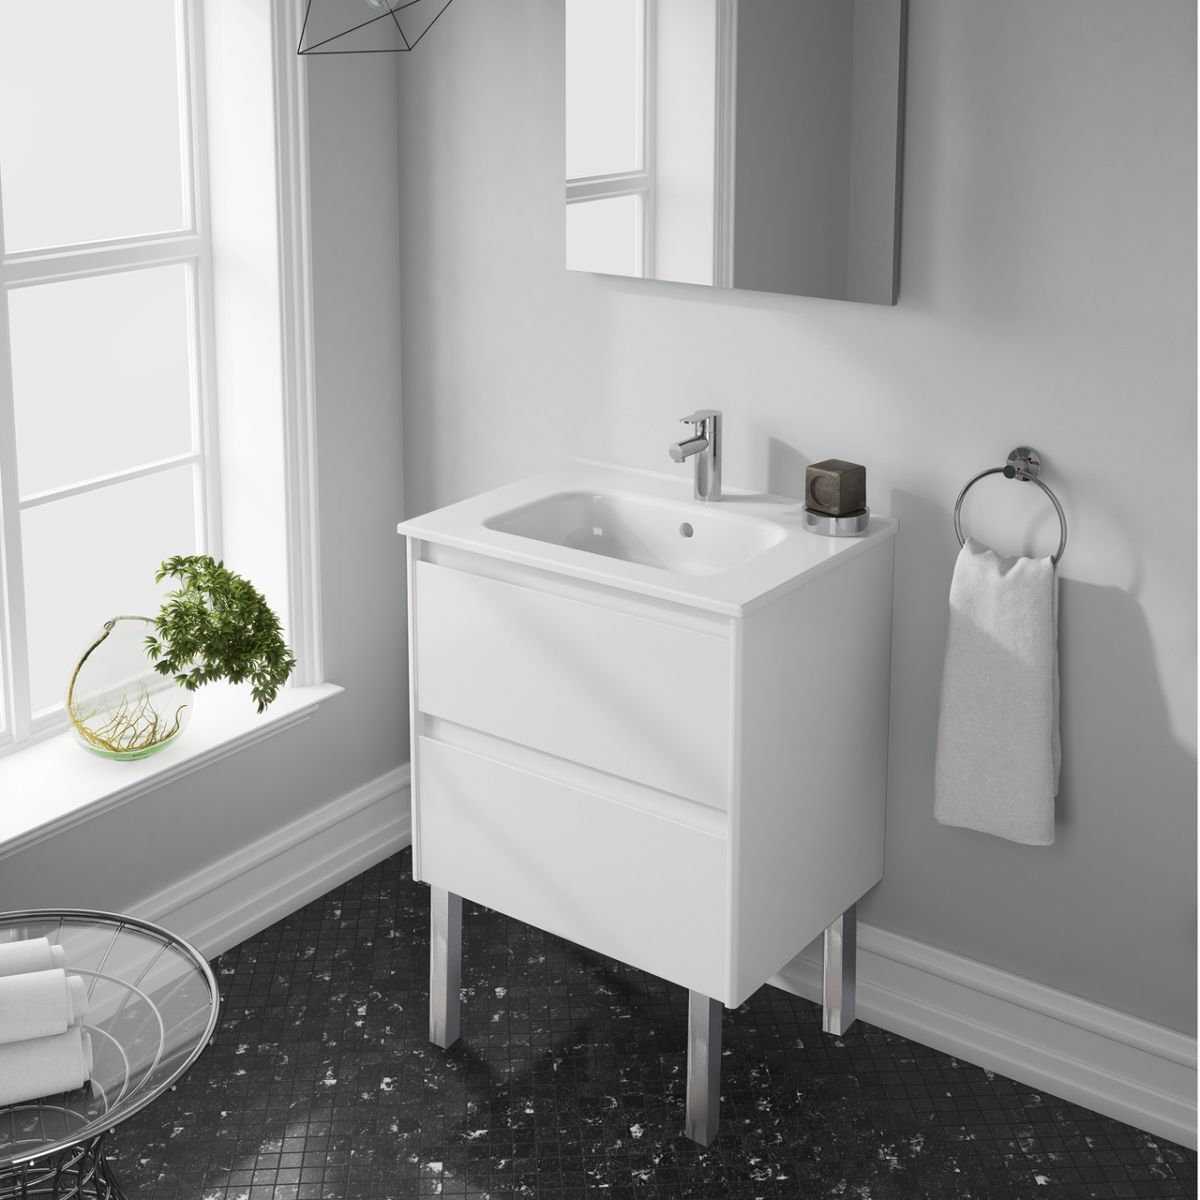 Best Bright Bathroom Colors - White Bathroom Vanity